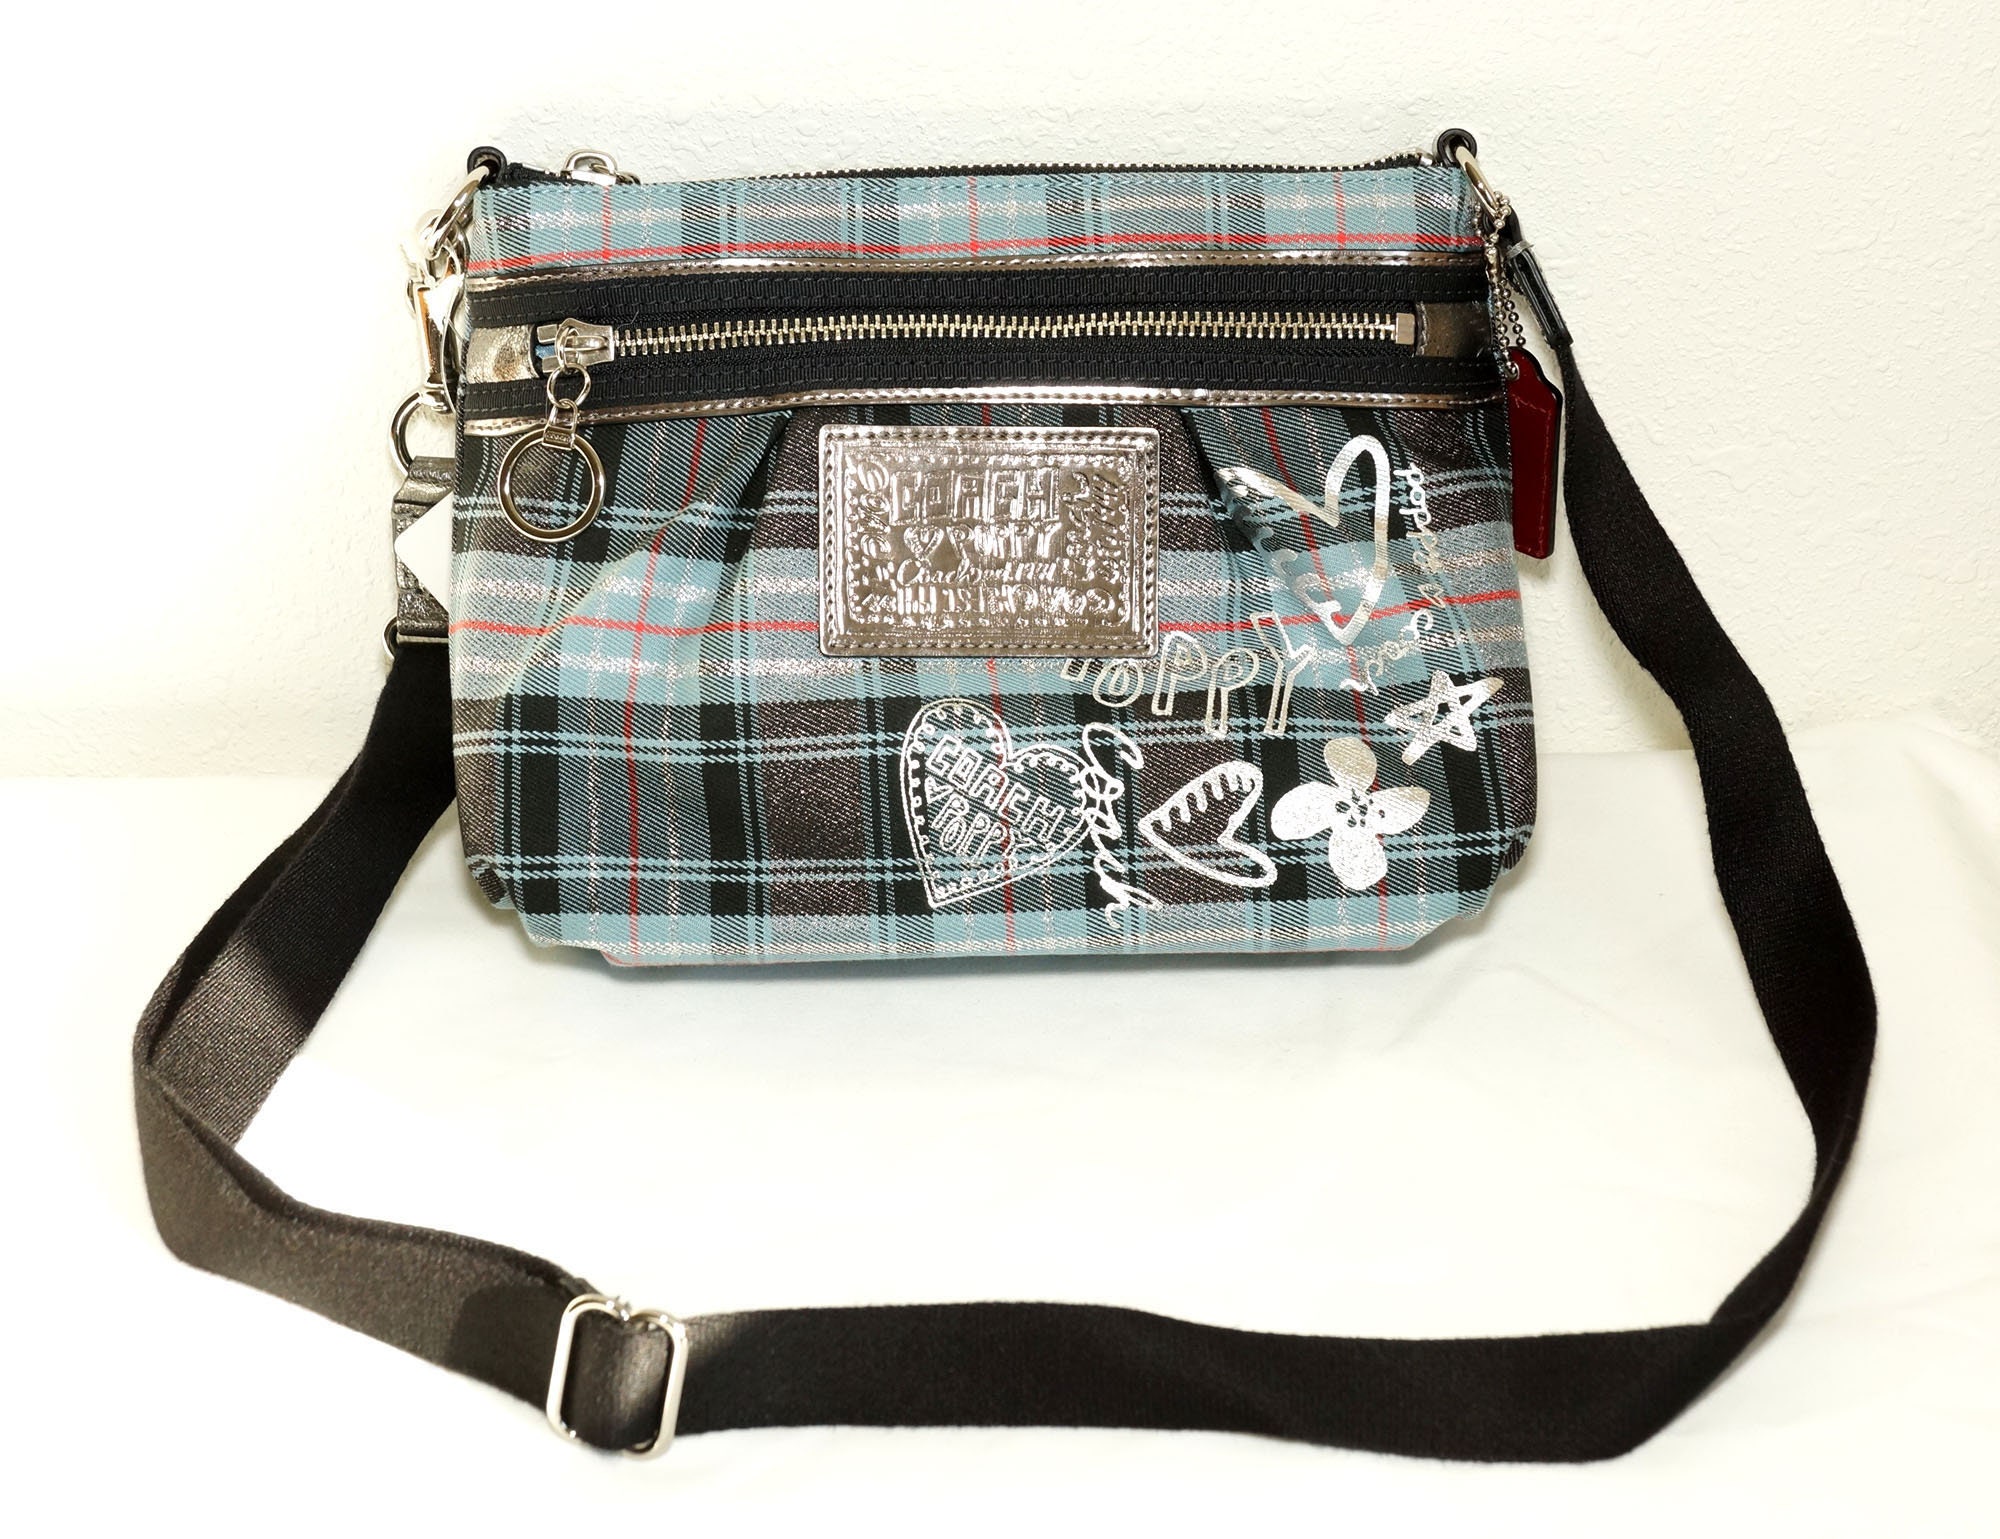 Coach Poppy Op Art Glam Tote Bag Shoulder Bag 13826 Black $398 MSRP | eBay